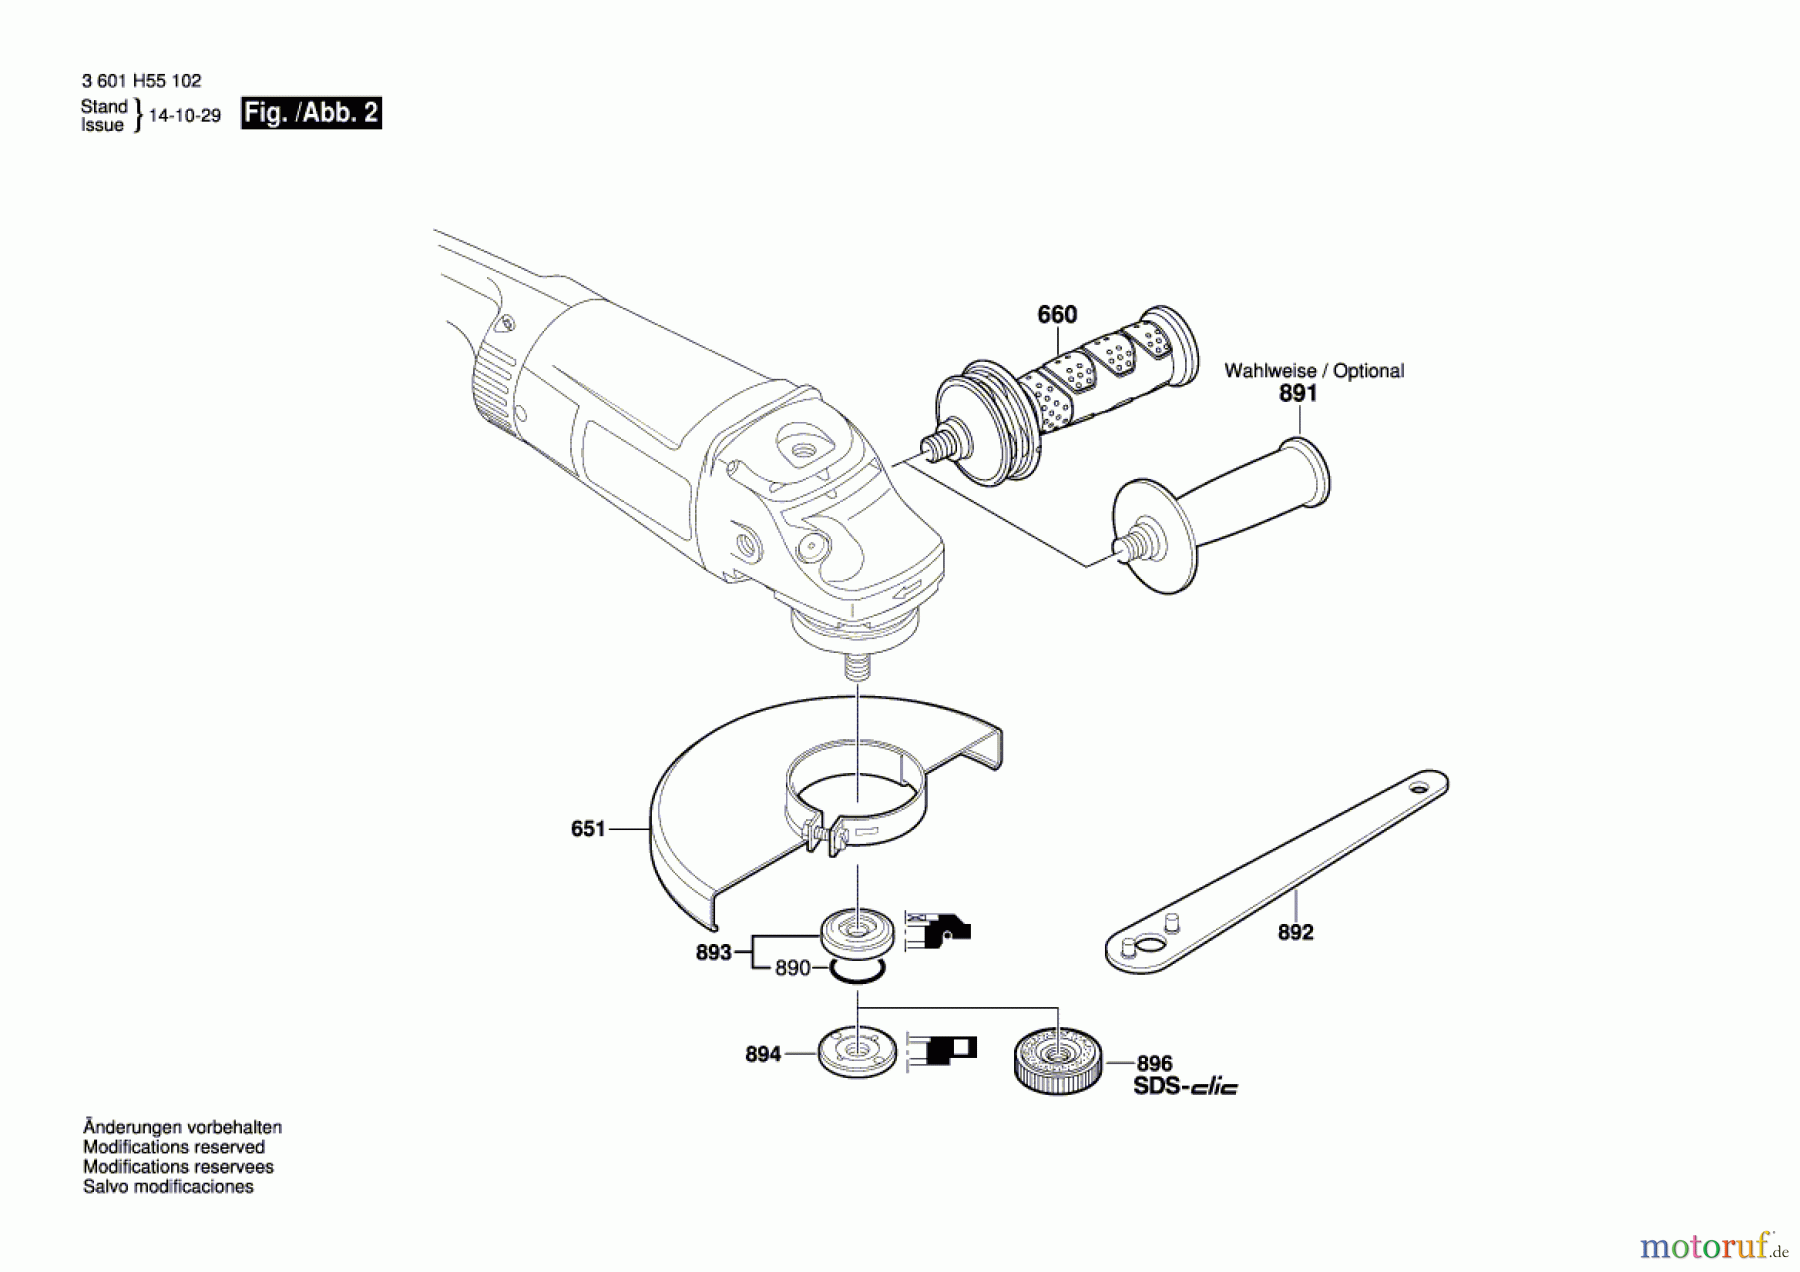  Bosch Werkzeug Winkelschleifer GWS 26-180 JH Seite 2